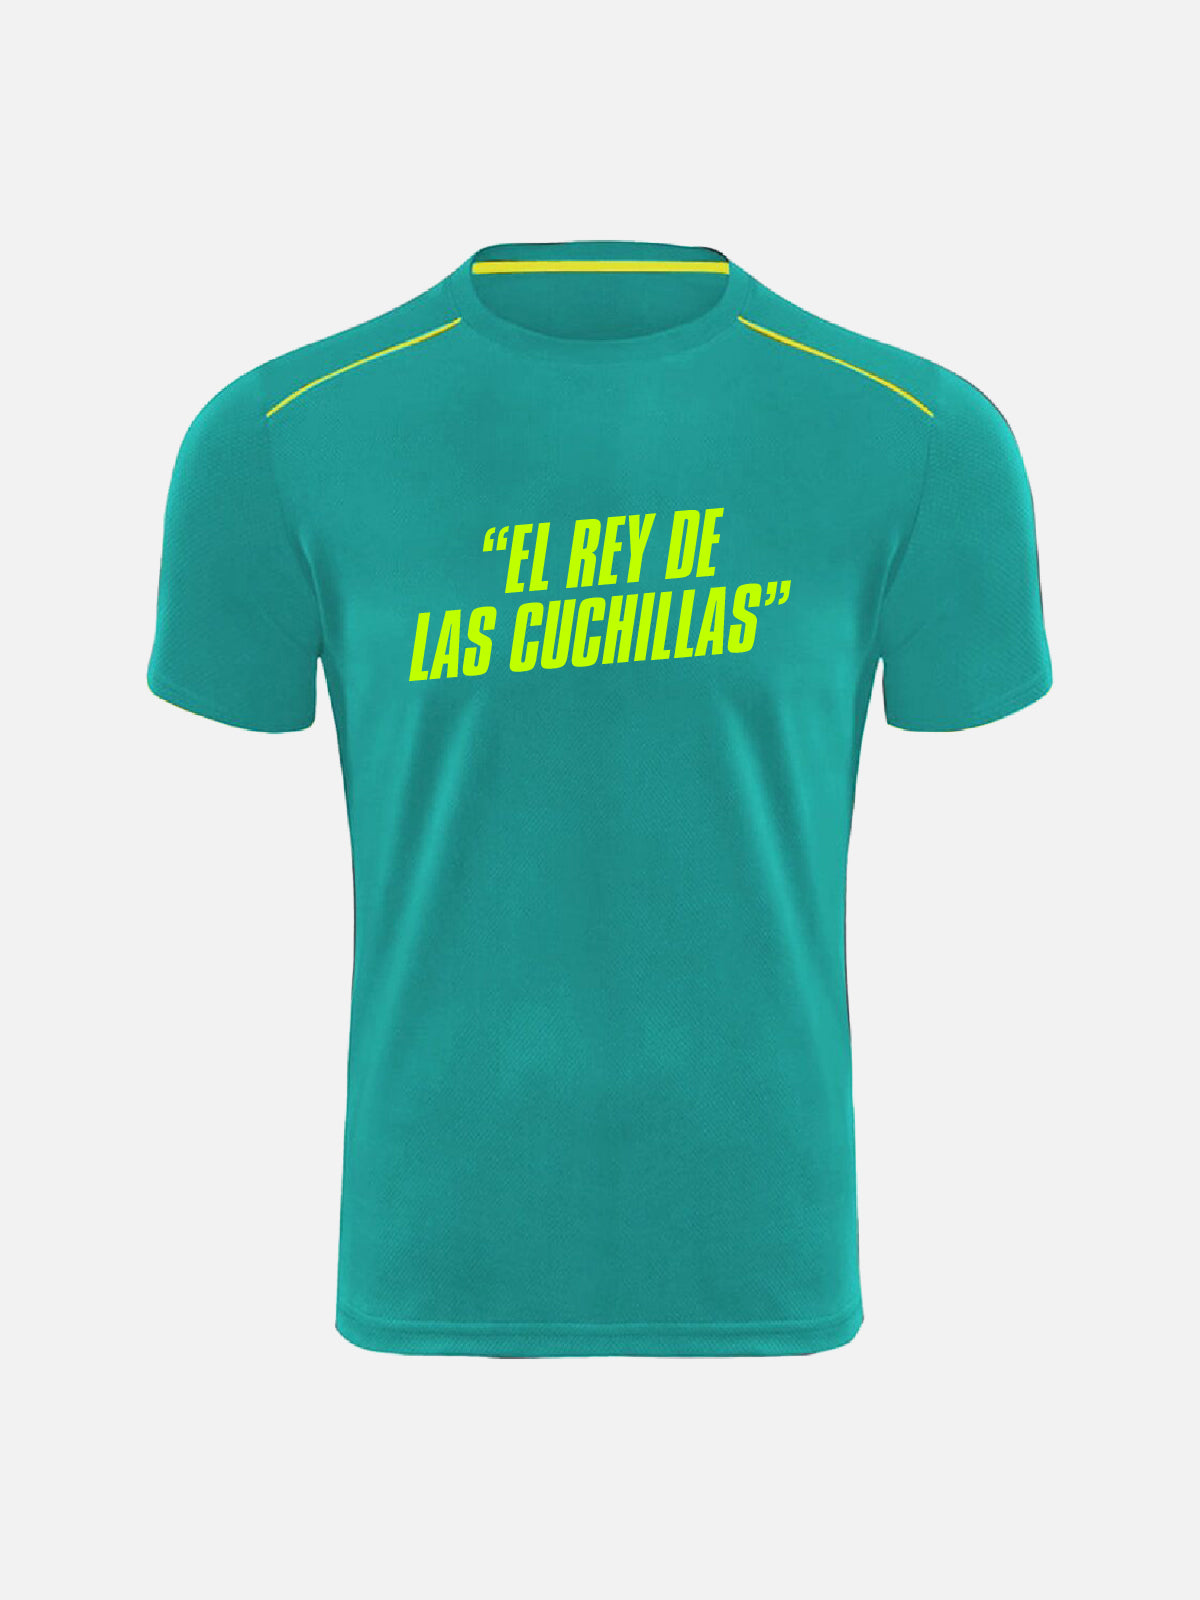 Personalized T-shirt -"El Rey De Las Cuchillas"